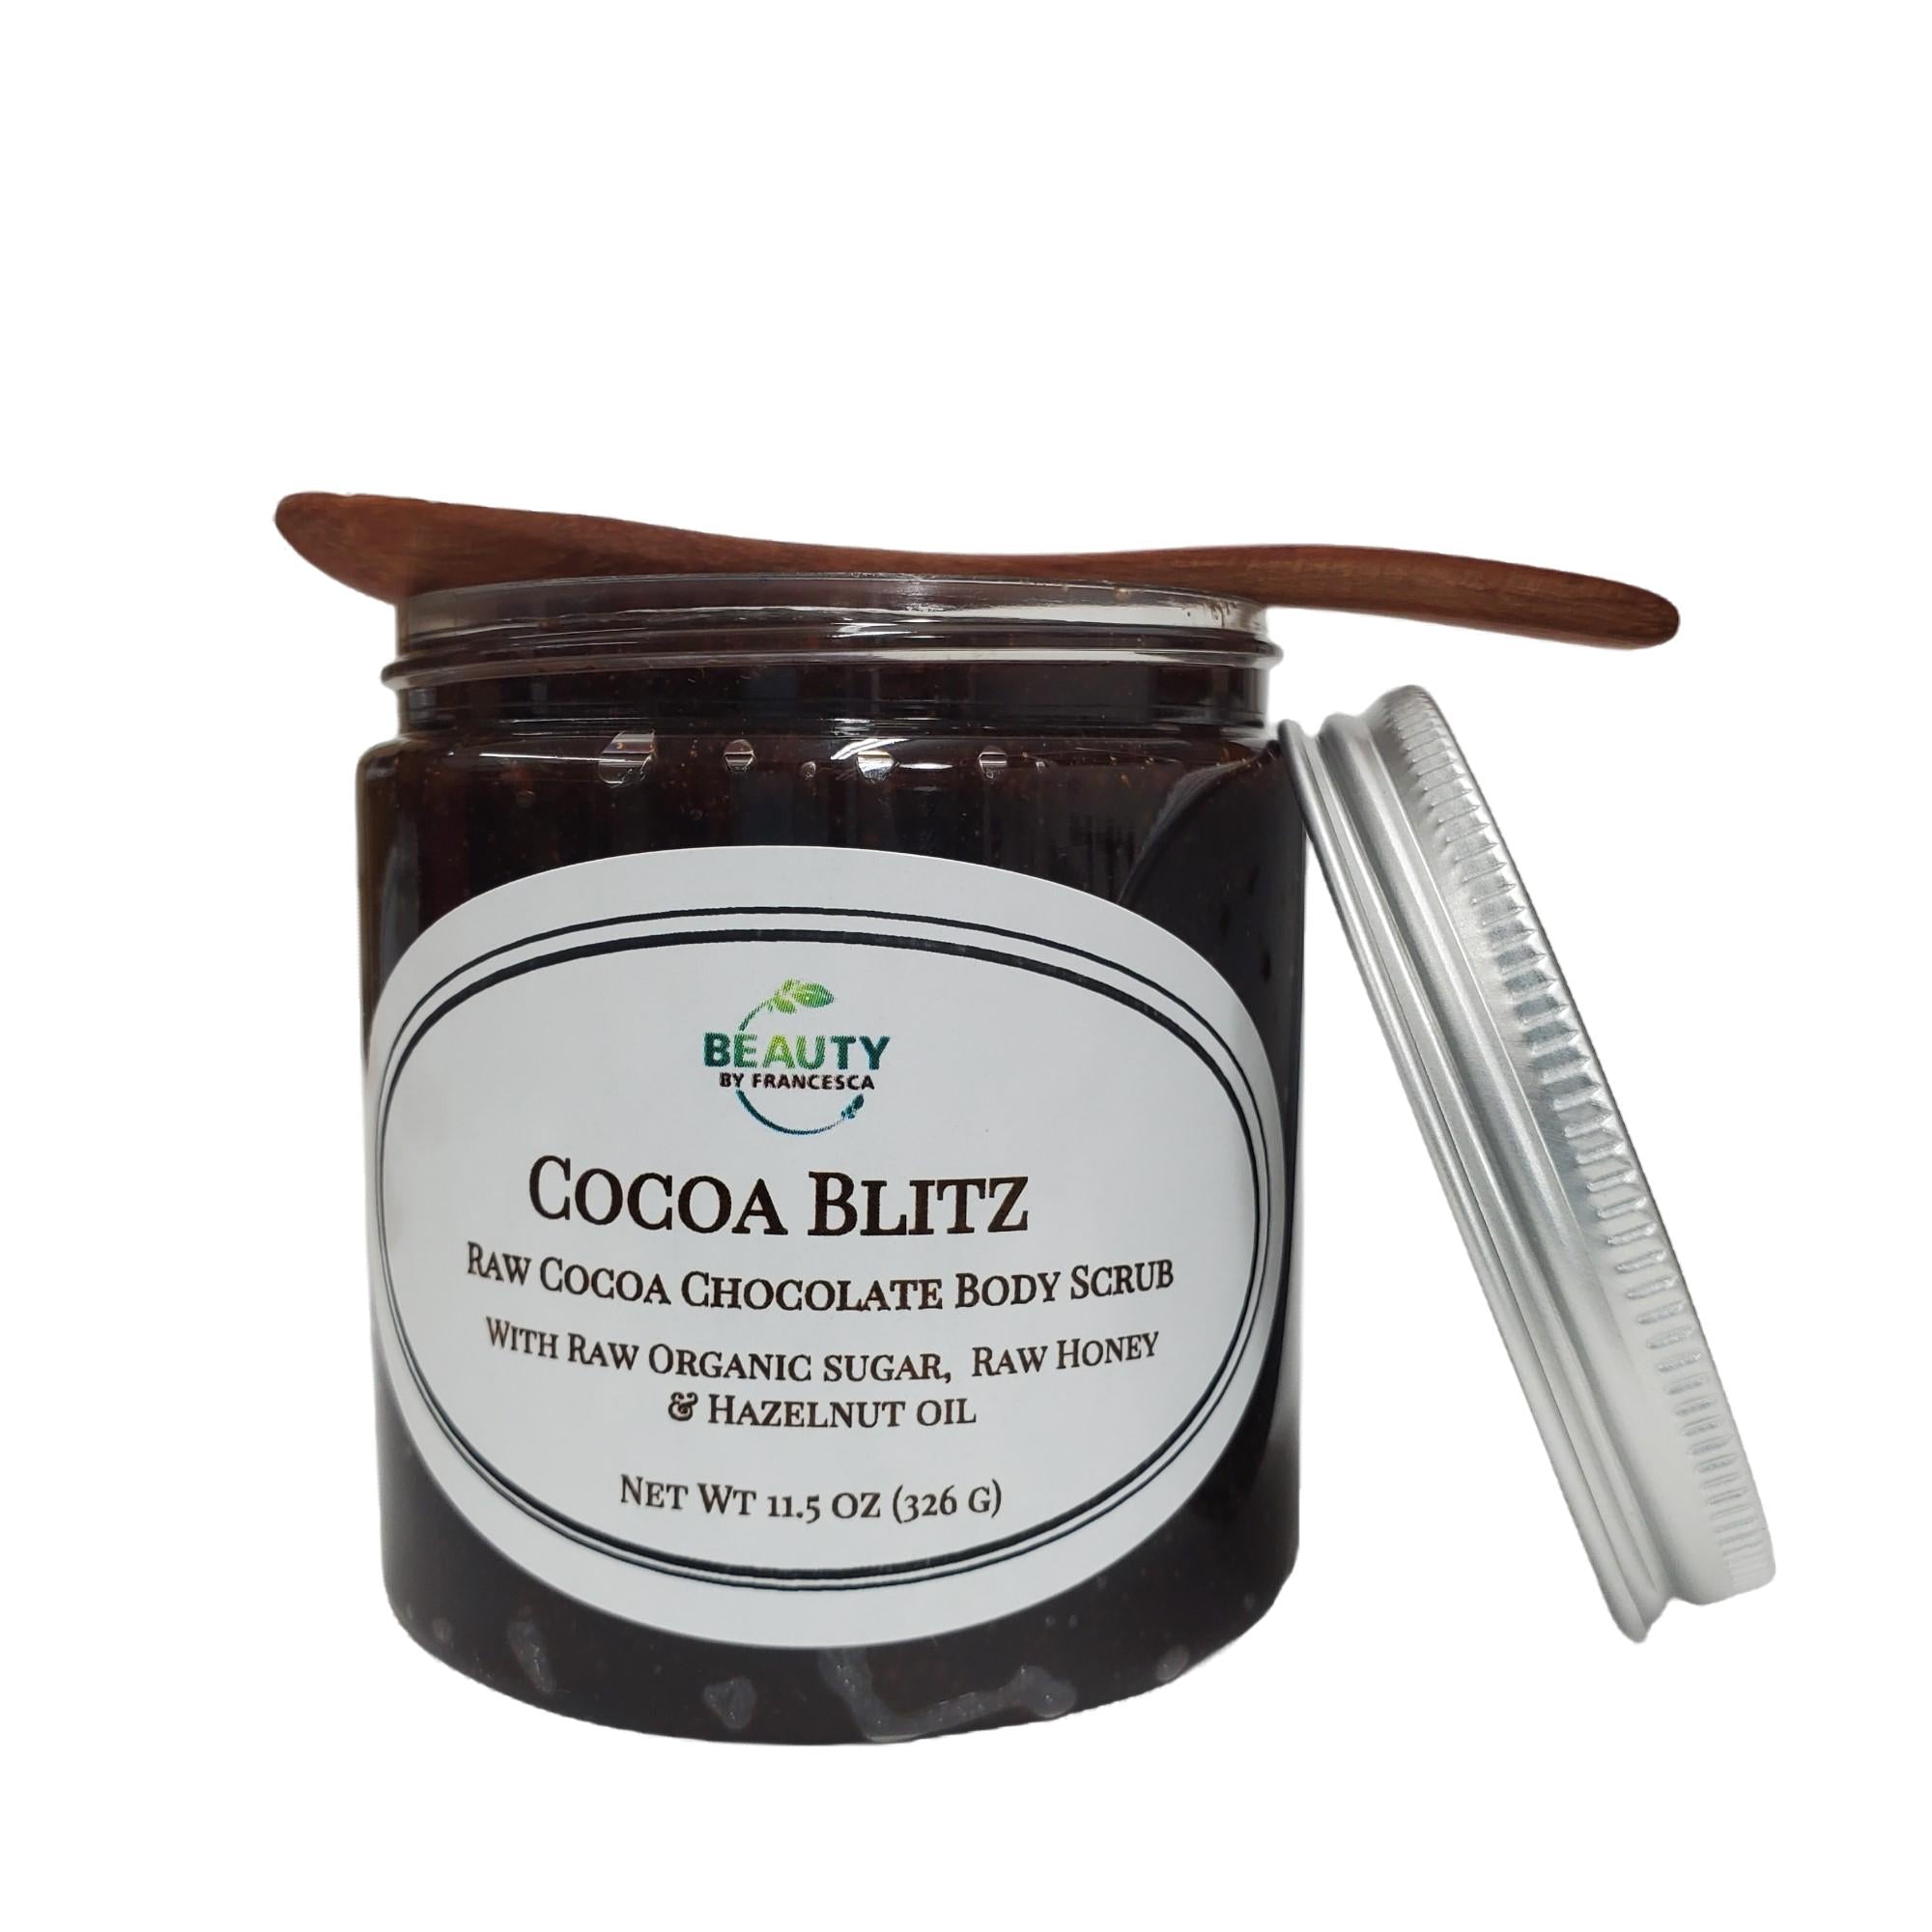 Cocoa Blitz - Chocolate Body Scrub